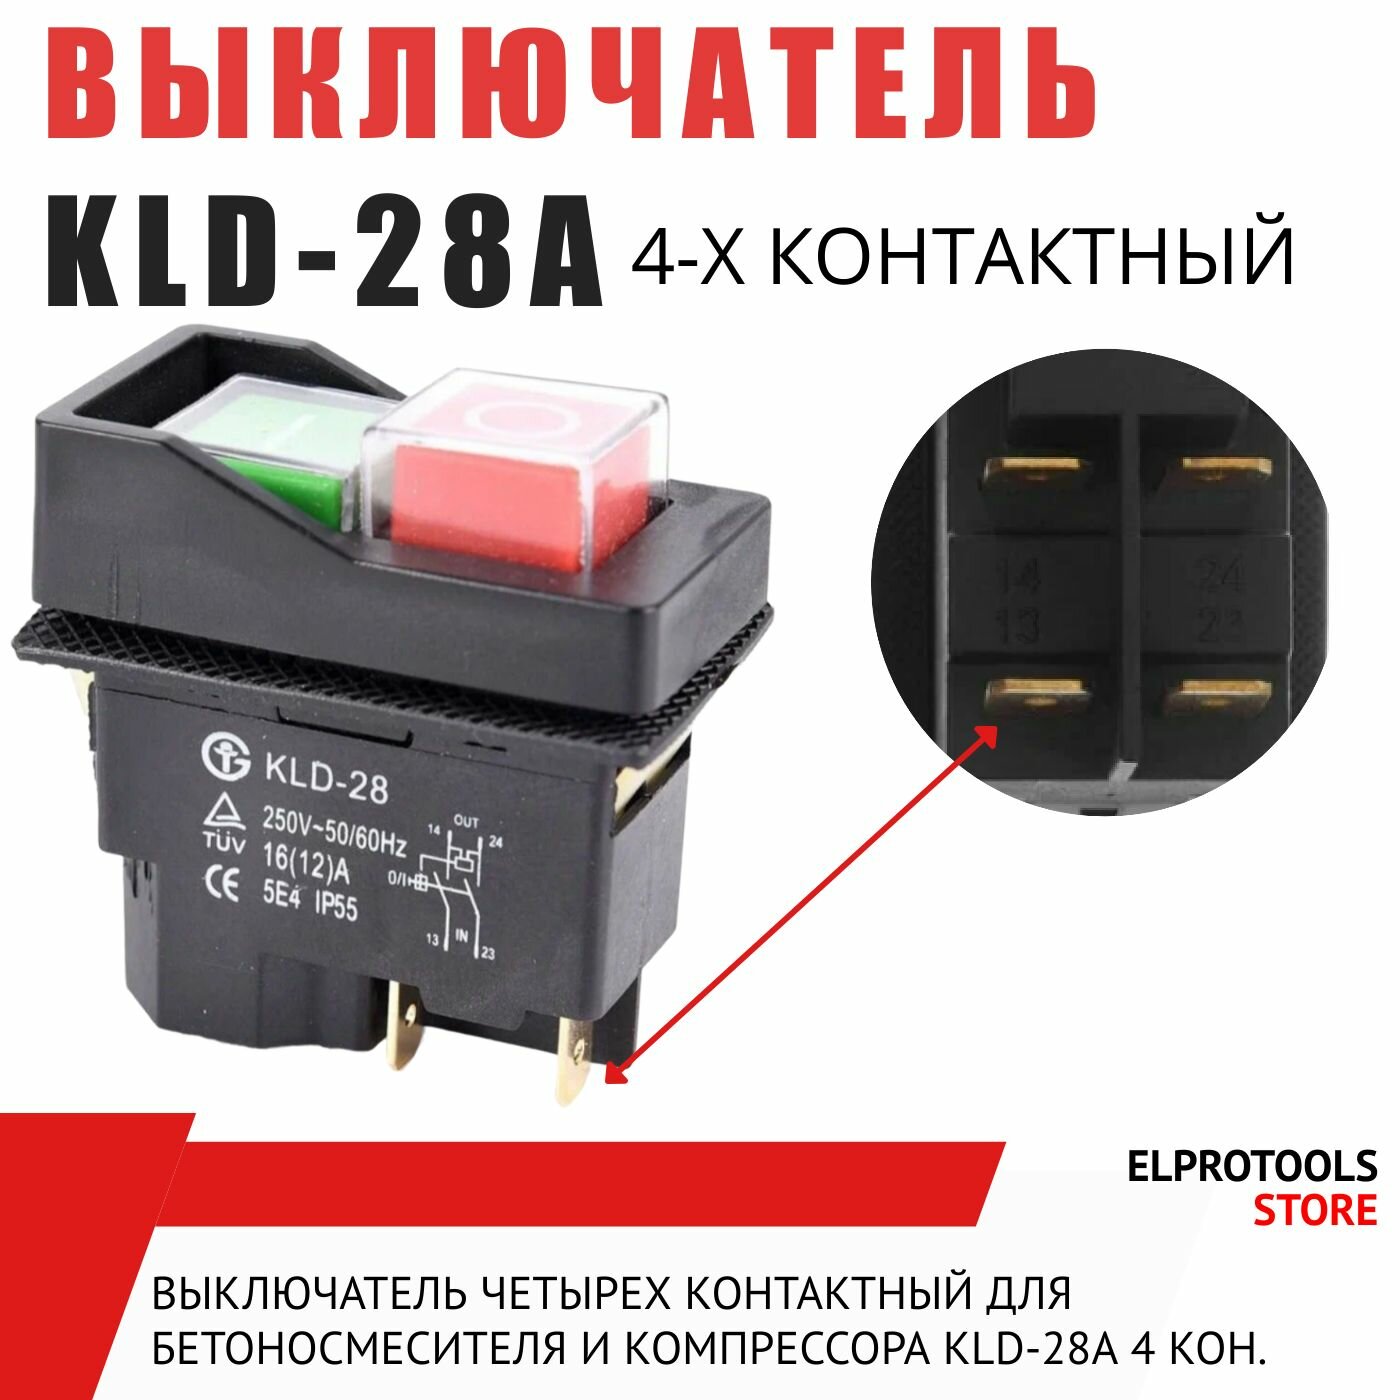 101105 Выключатель четырех контактный для бетоносмесителя и компрессора старого образца, KLD-28A 4 кон.